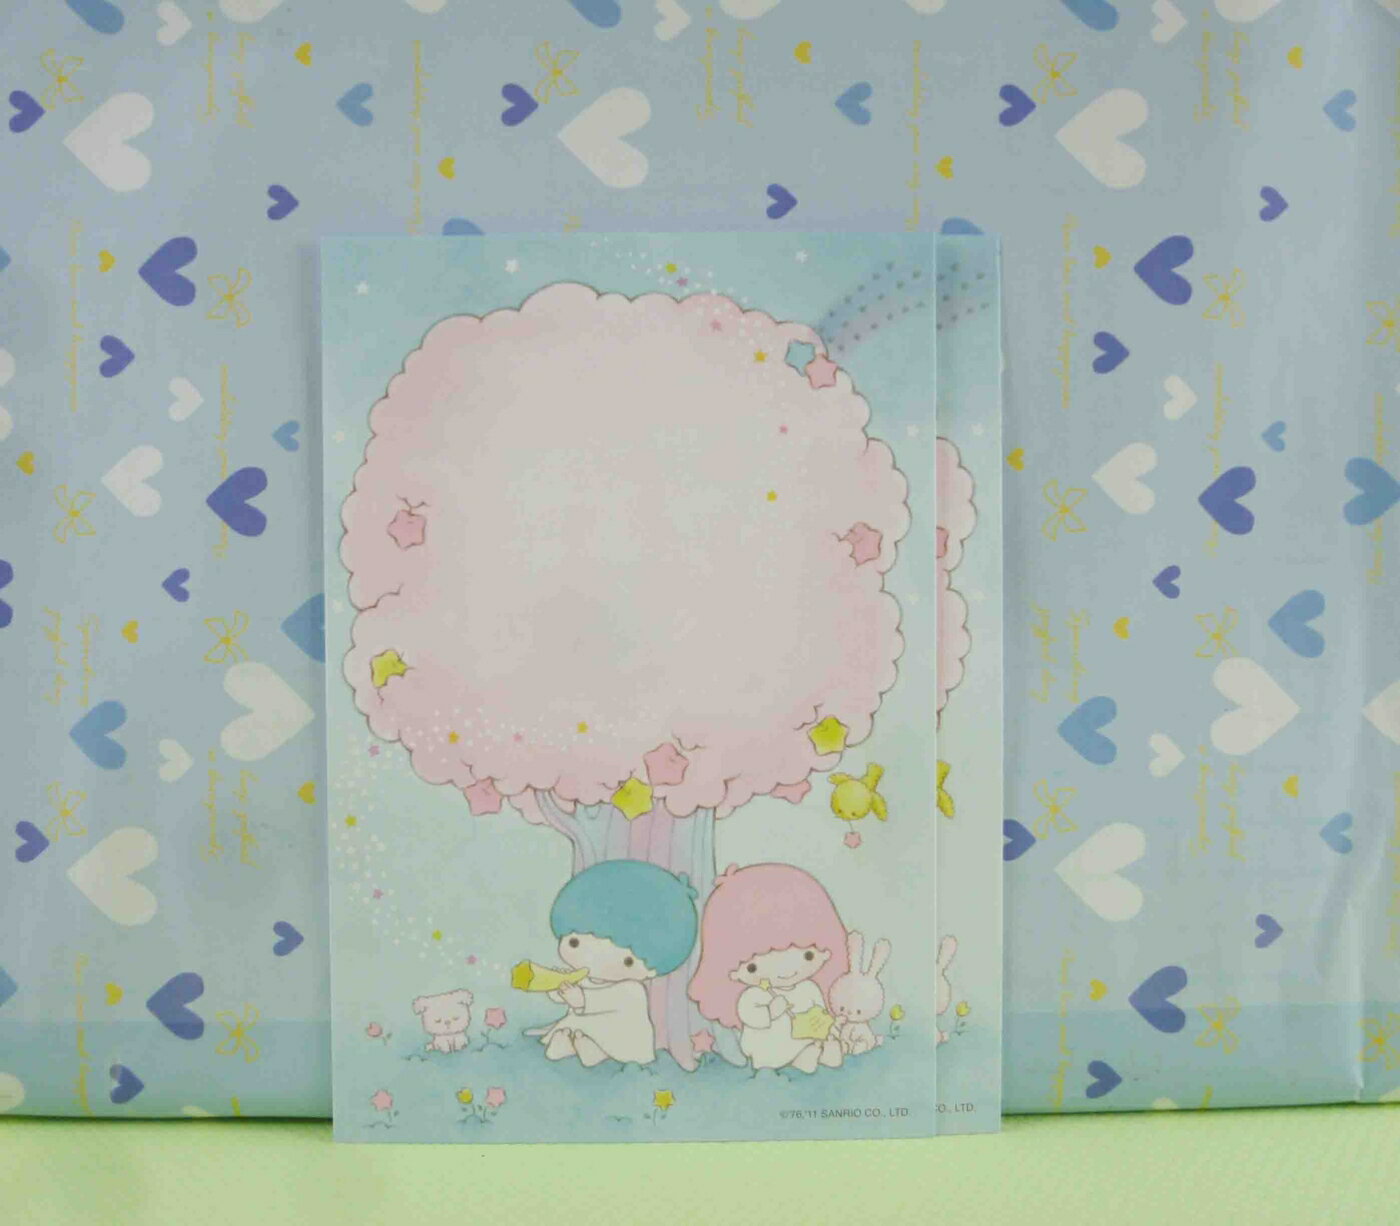 【震撼精品百貨】Hello Kitty 凱蒂貓 明信片(2入)-粉色樹 震撼日式精品百貨